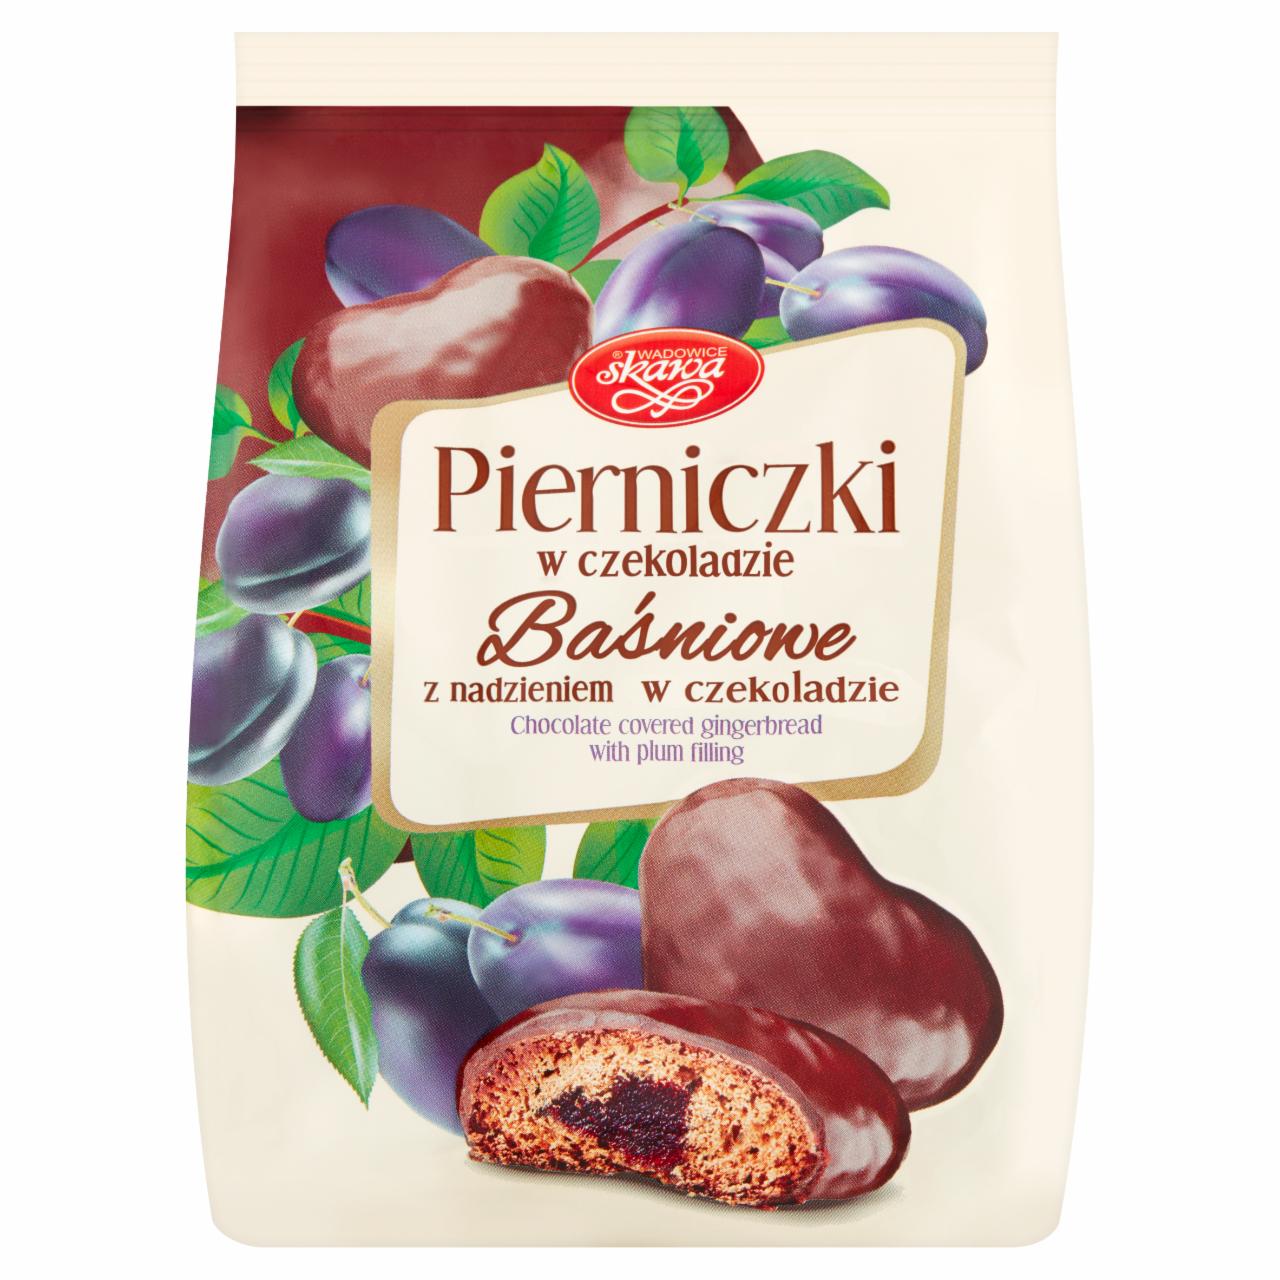 Zdjęcia - Wadowice Skawa Pierniczki w czekoladzie baśniowe z nadzieniem o smaku śliwkowym 150 g